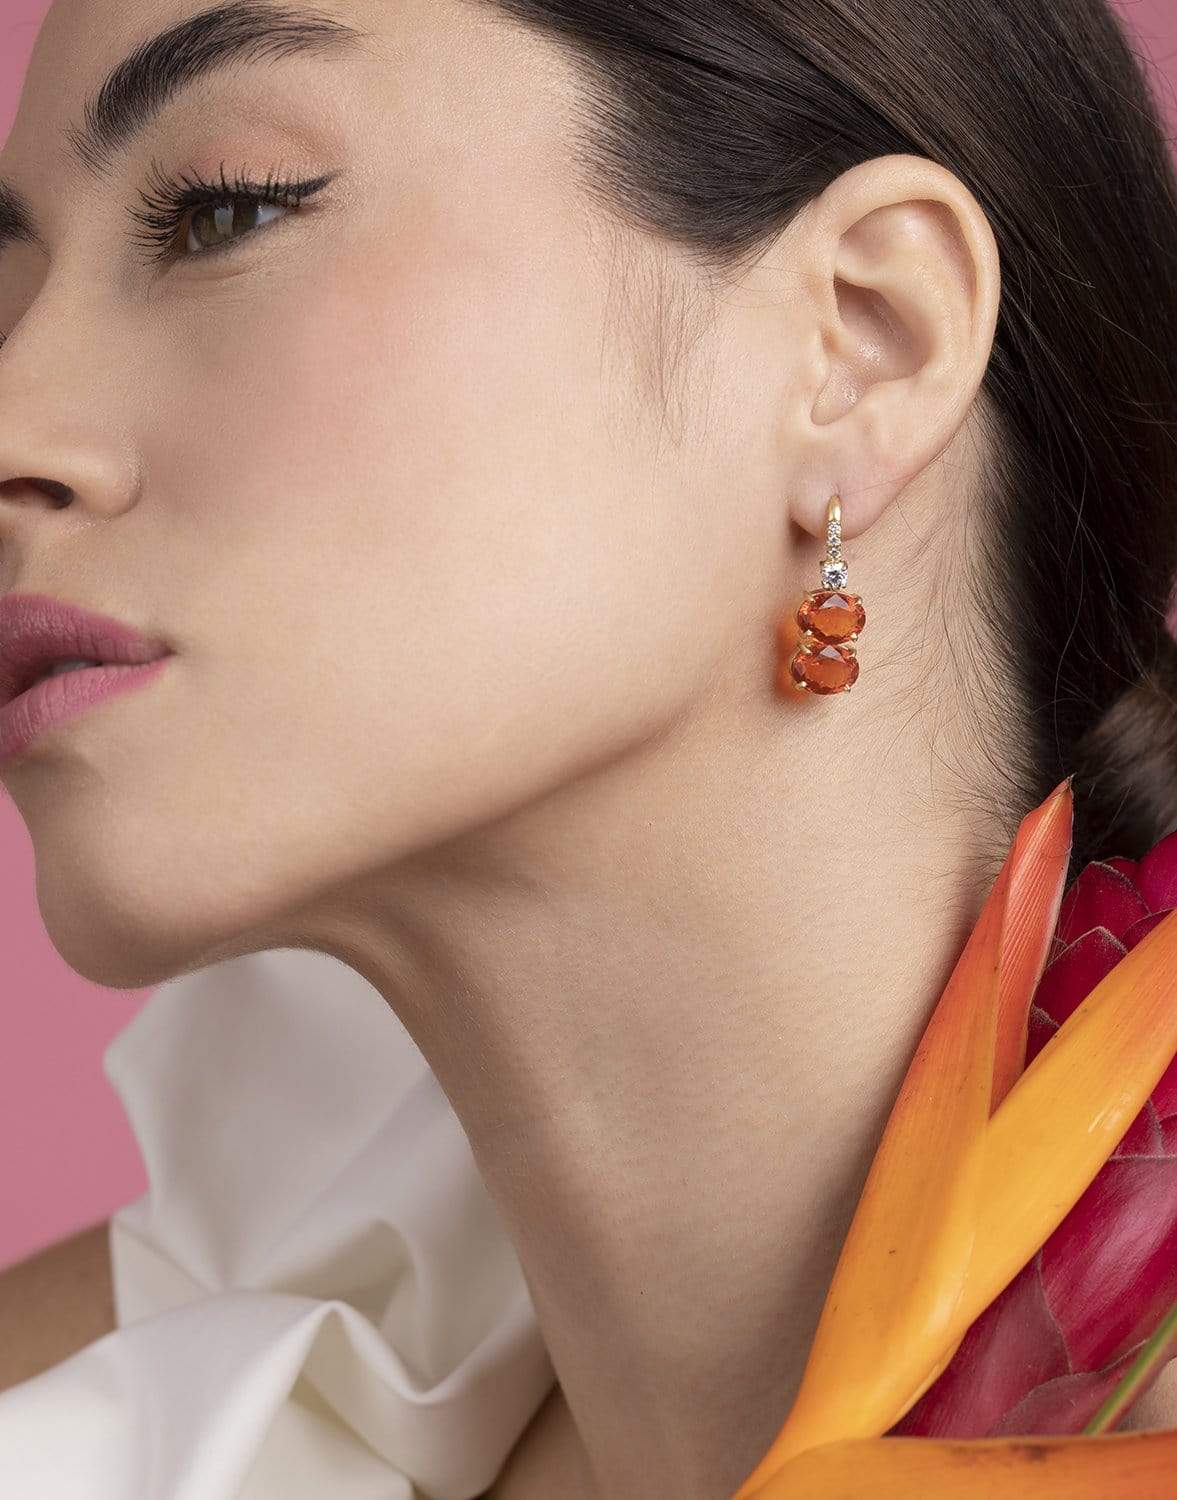 IRENE NEUWIRTH JEWELRY-Gemmy Gem Mexican Fire Opal Drop Earrings-YELLOW GOLD